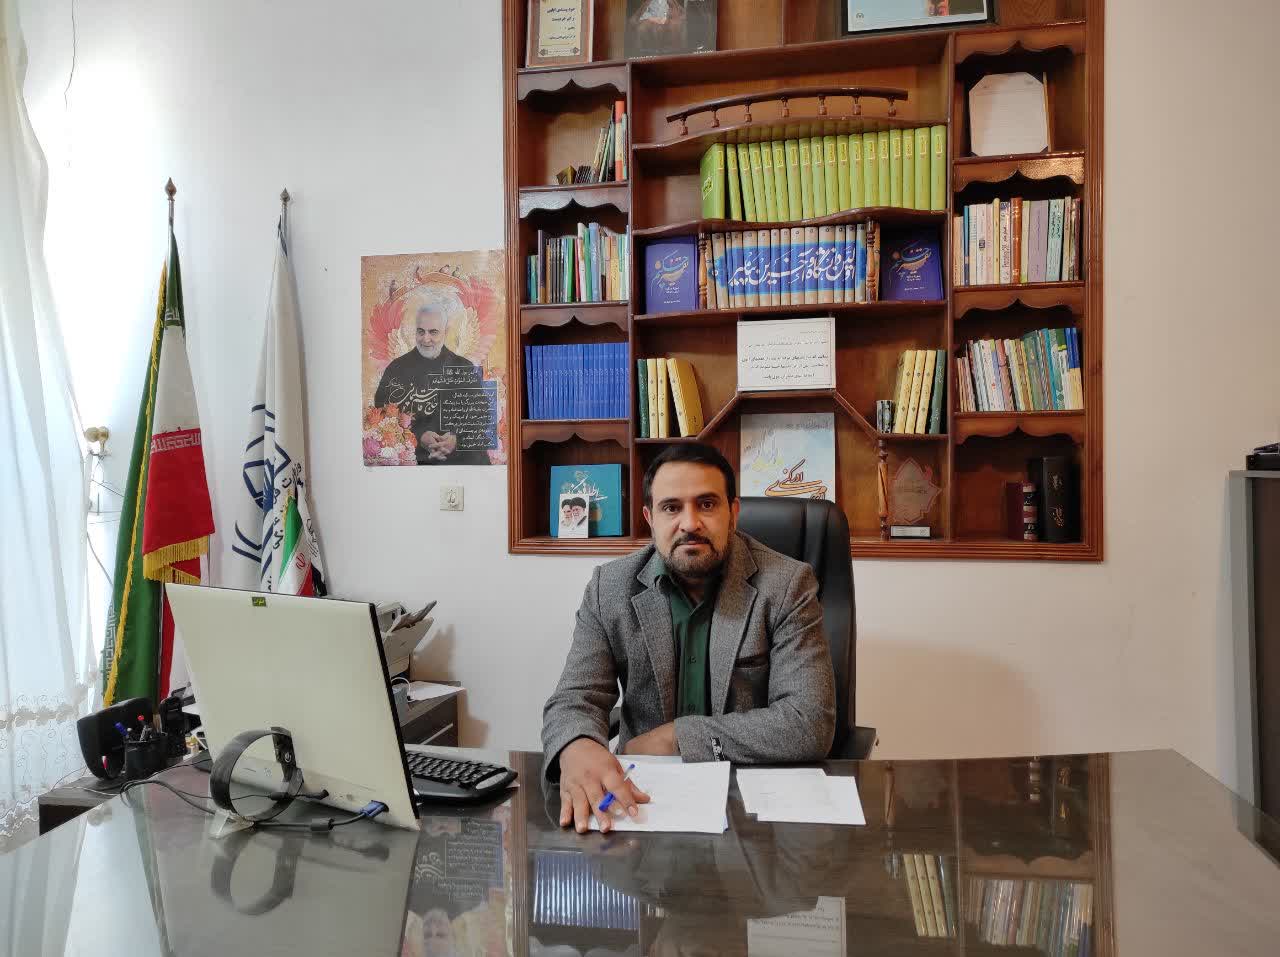 بسته برنامه های پیشنهادی هفته کتاب و کتابخوانی کانون های مساجد جنوب کرمان اعلام شد